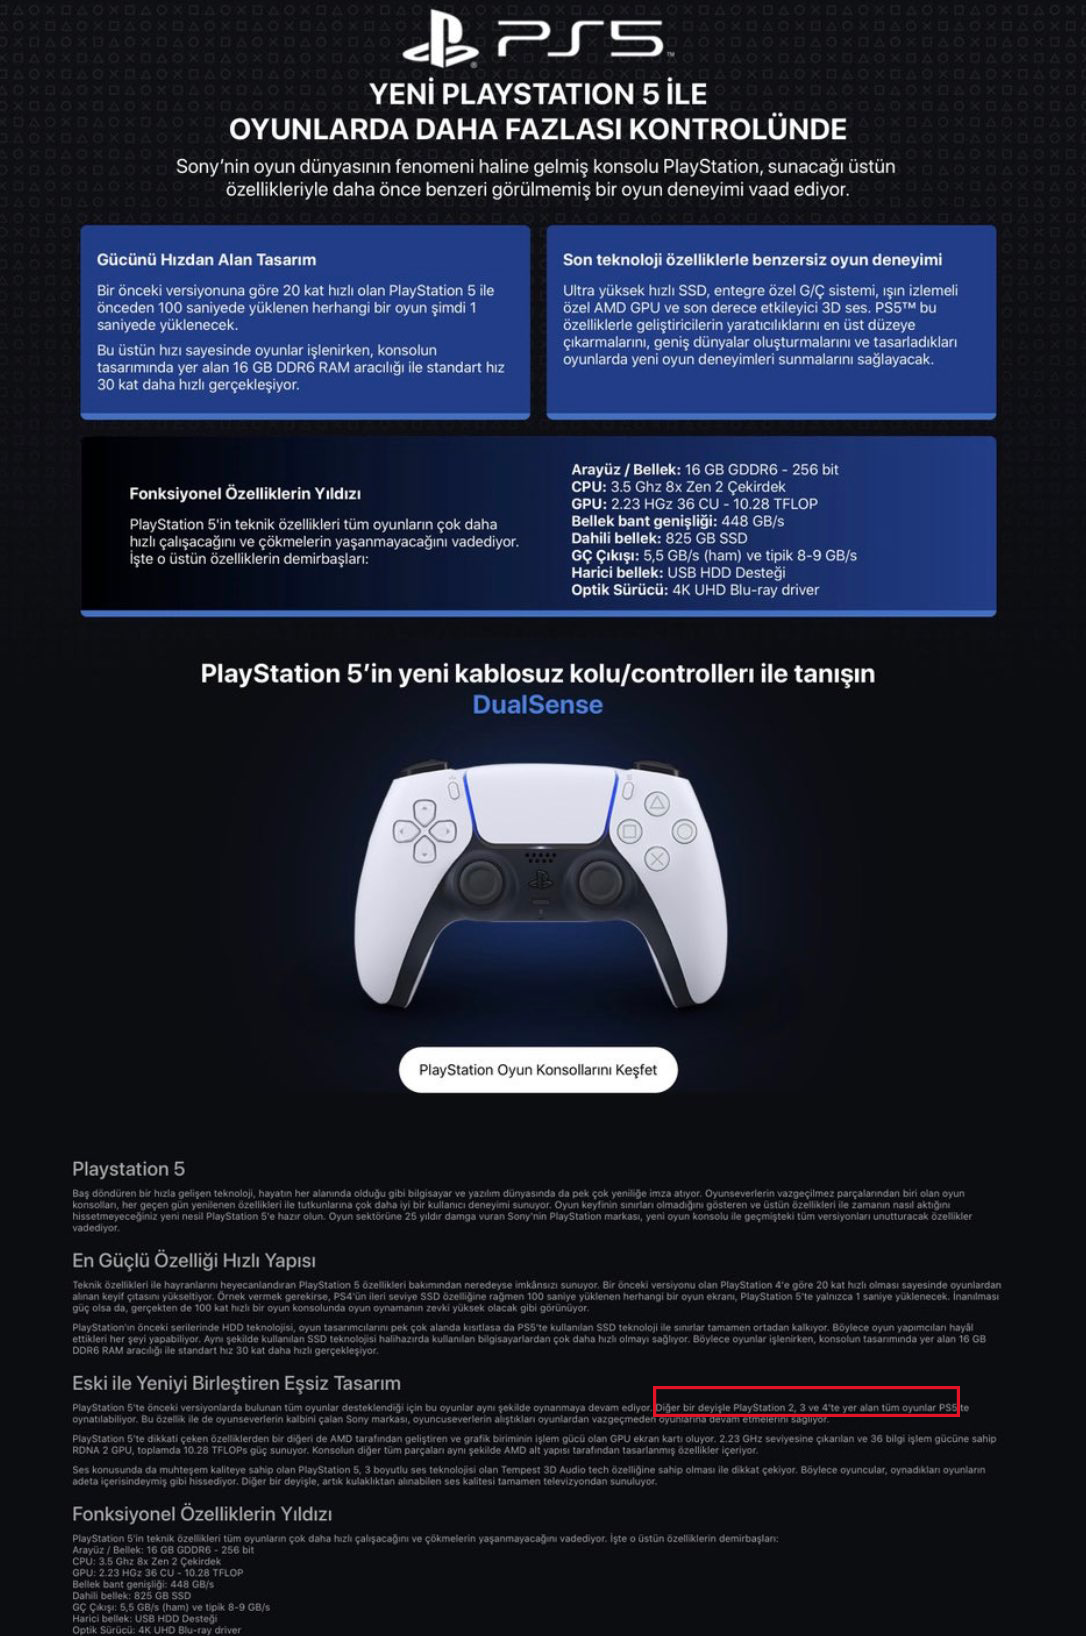 Sony PS5 PlayStation 5 Edición digital consola de juegos + controlador  inalámbrico - 16 GB de RAM GDDR6, SSD de 825 GB, salida 8K de 120 Hz, color